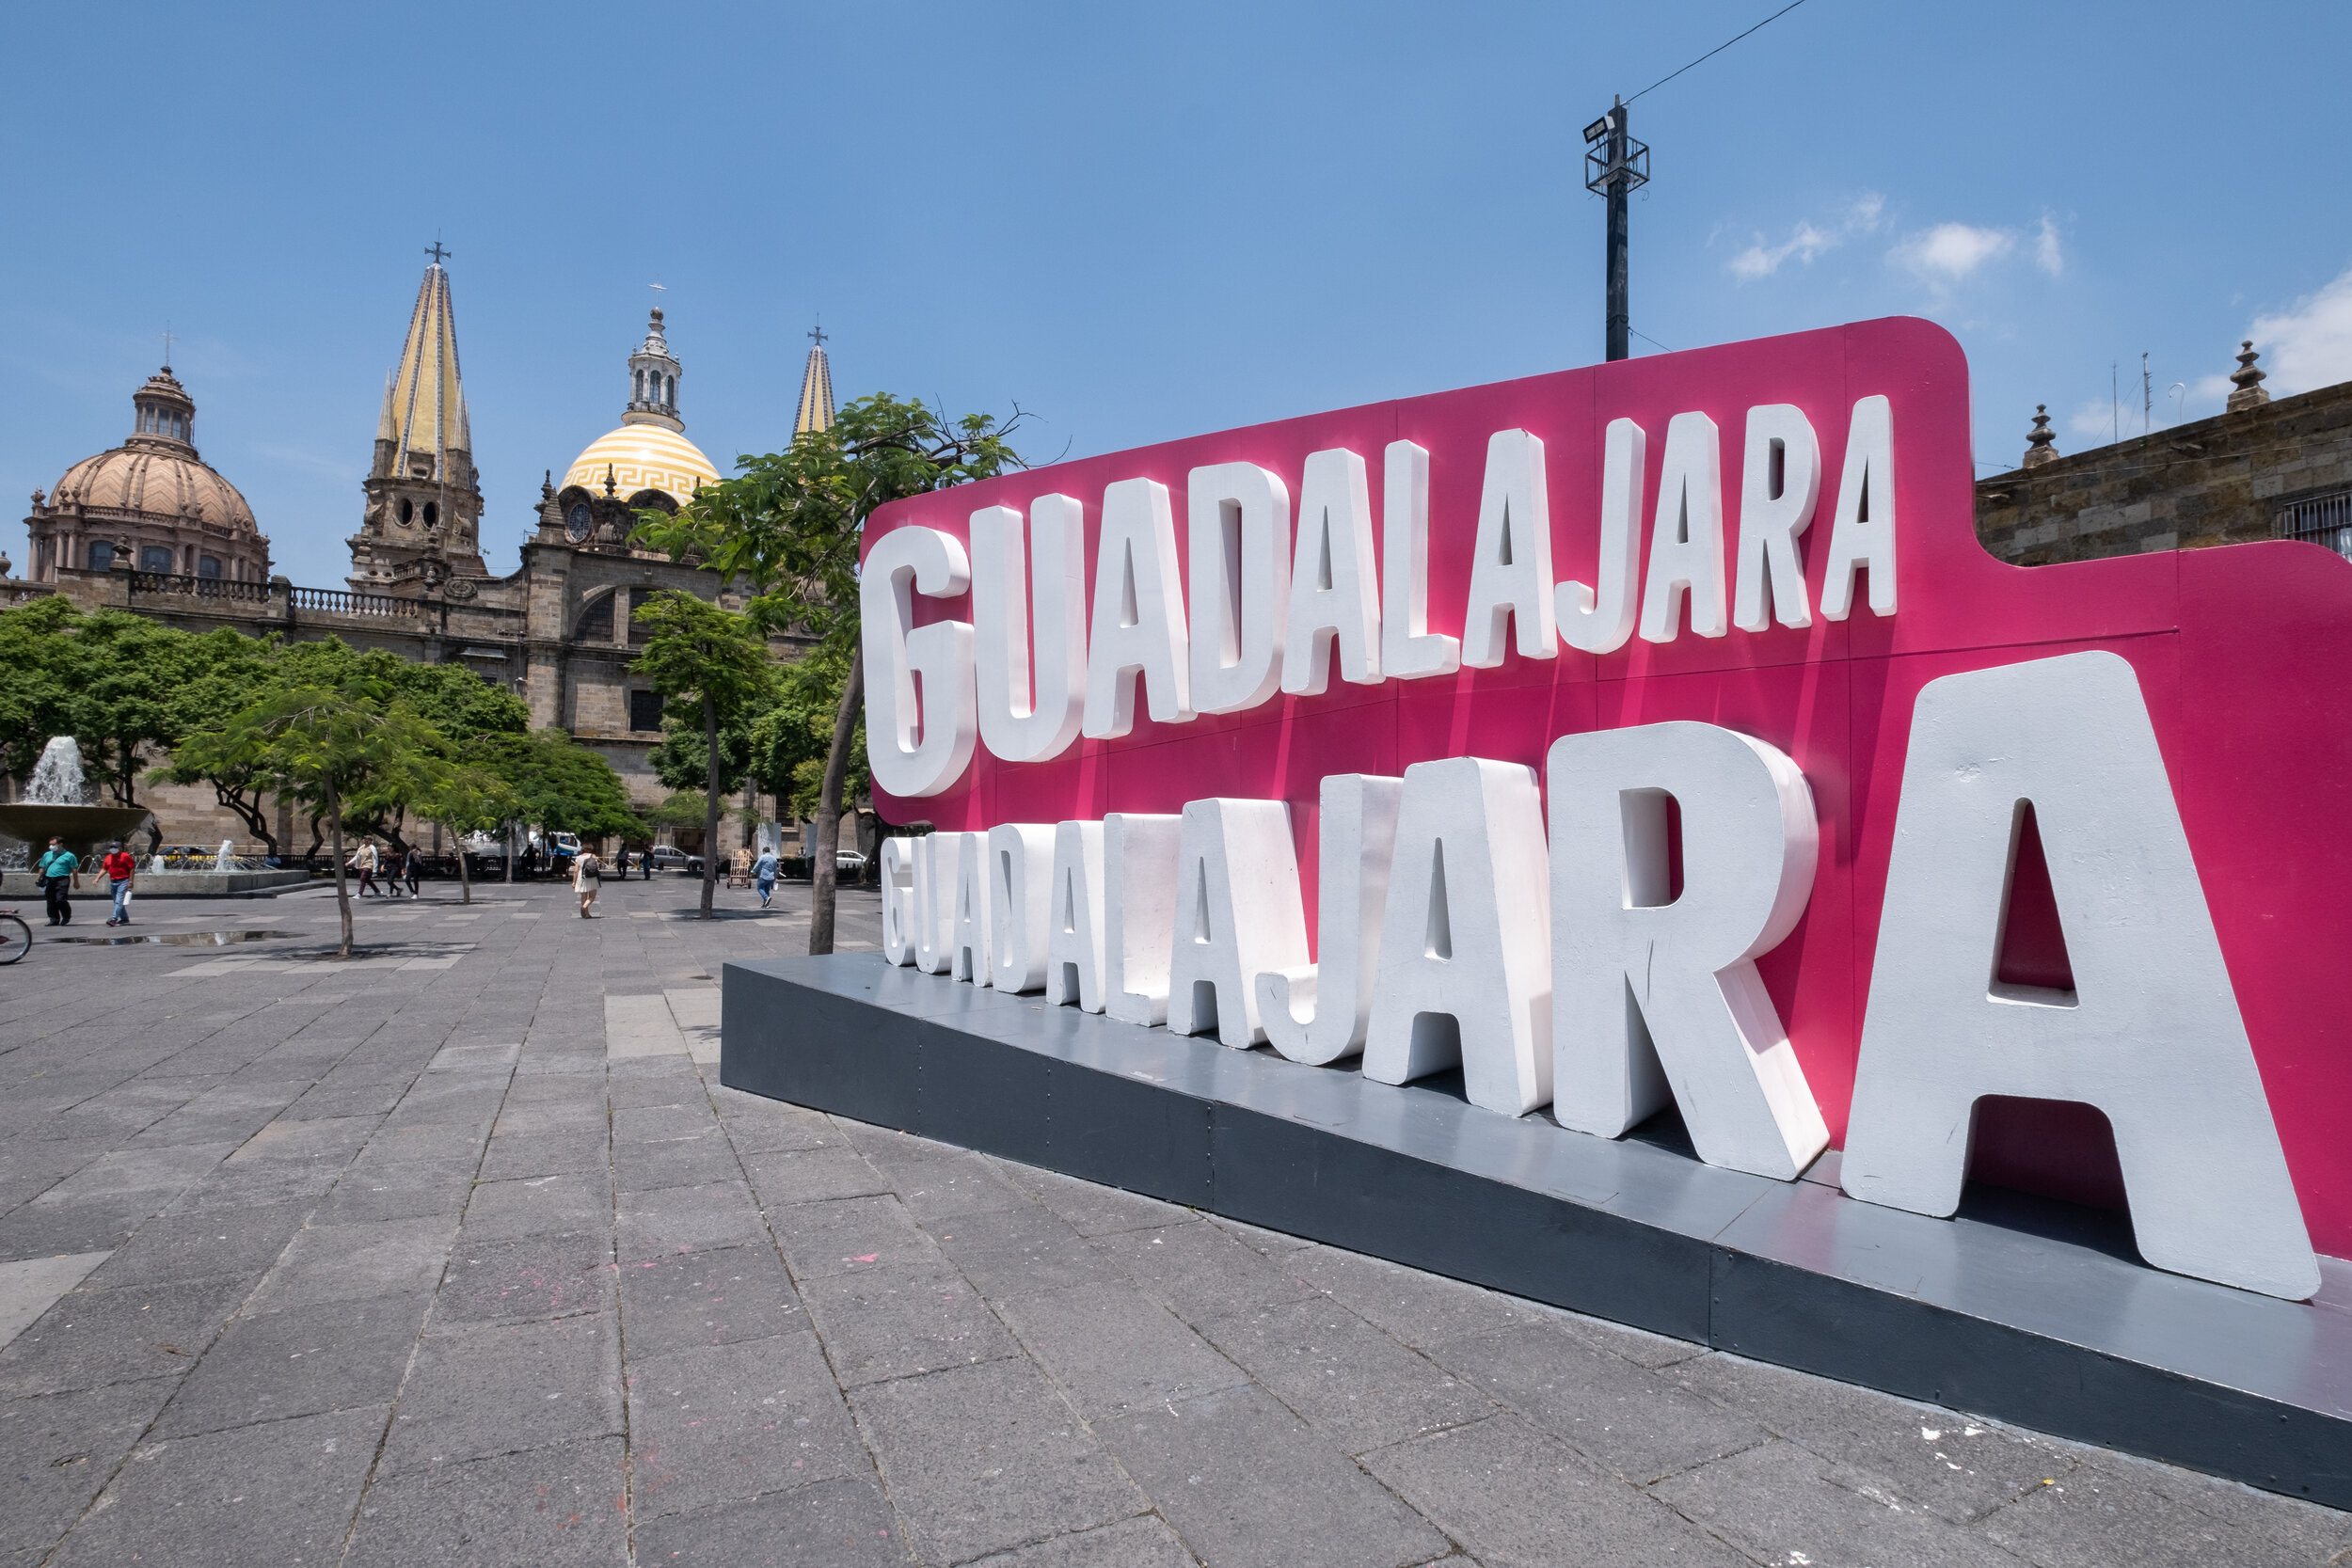 Guadalajara dating in long distance Guadalajara Dating